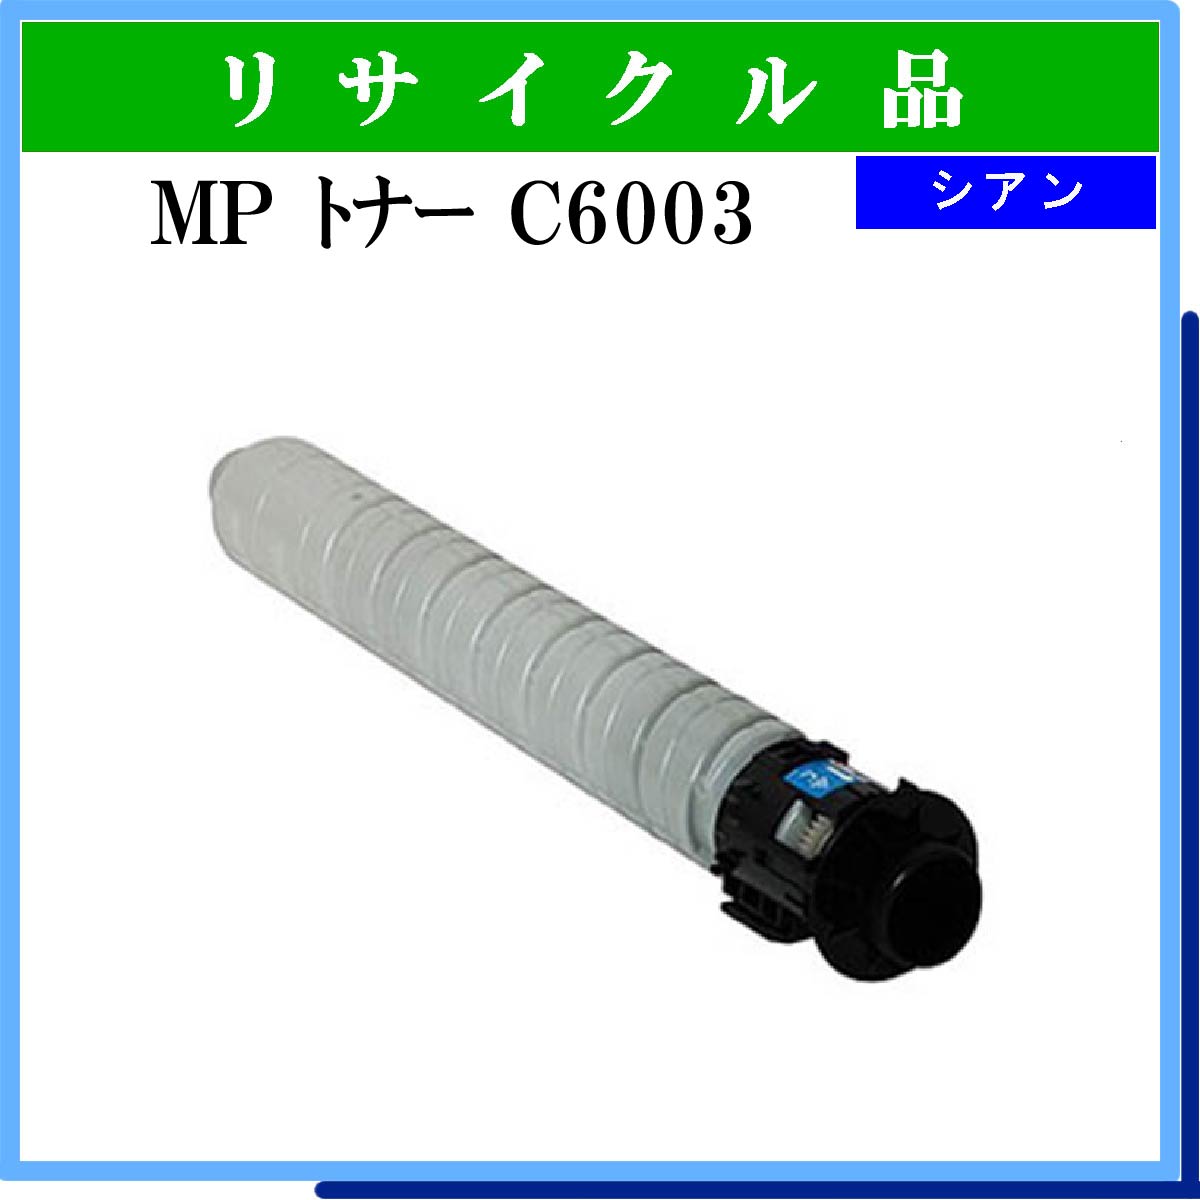 MP ﾄﾅｰ C6003 ｼｱﾝ - ウインドウを閉じる